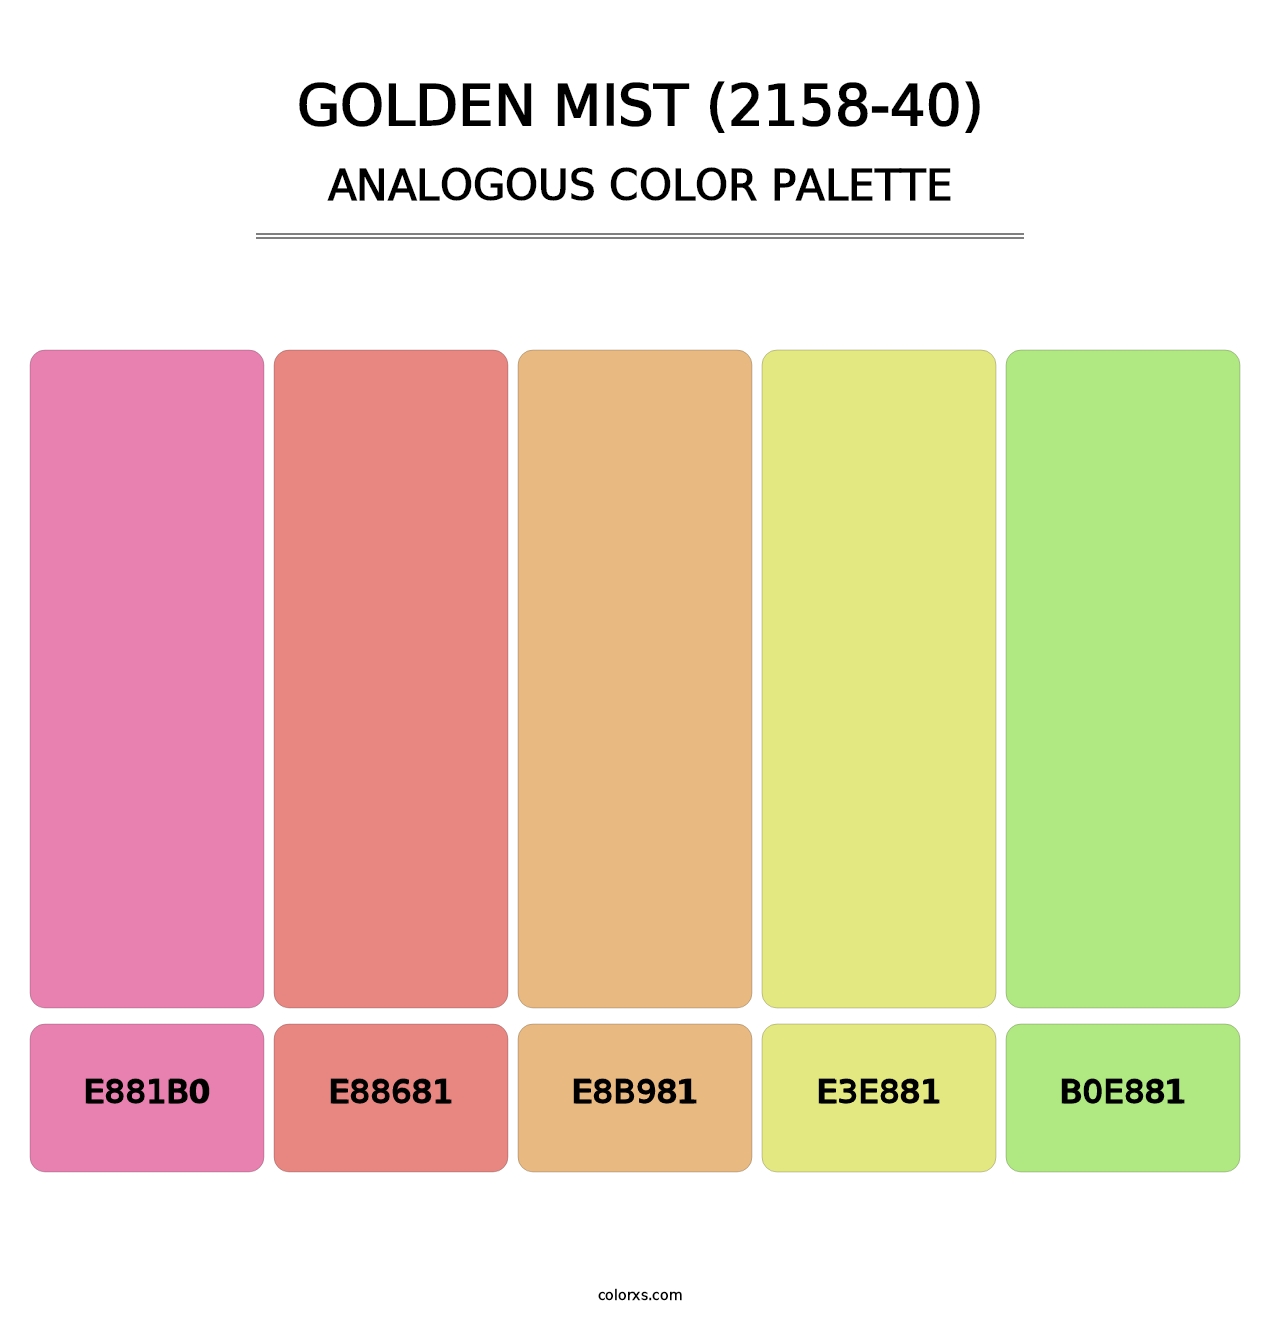 Golden Mist (2158-40) - Analogous Color Palette